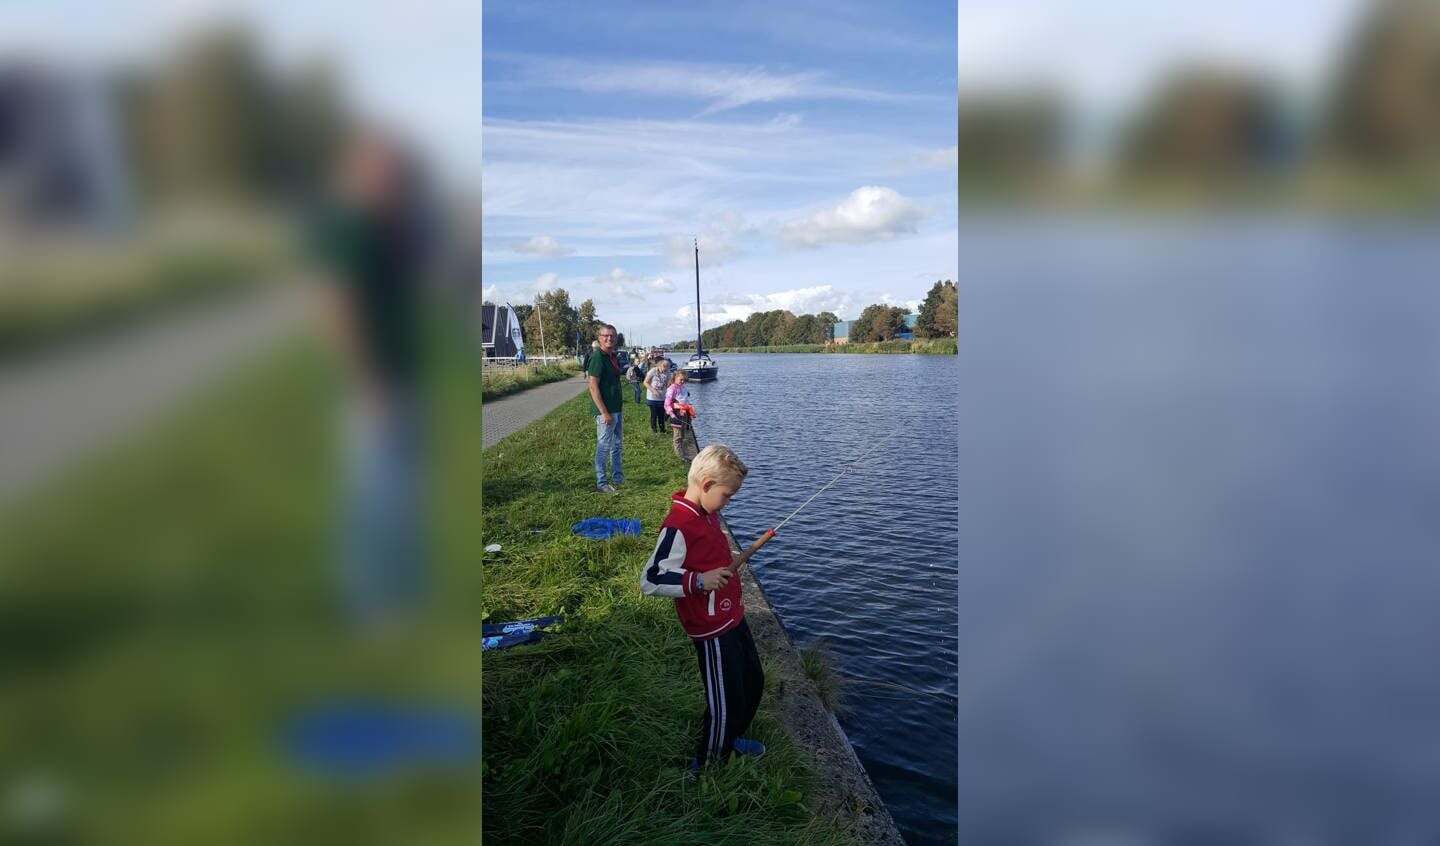 Groepje kinderen vangen vissen tijdens cursus.